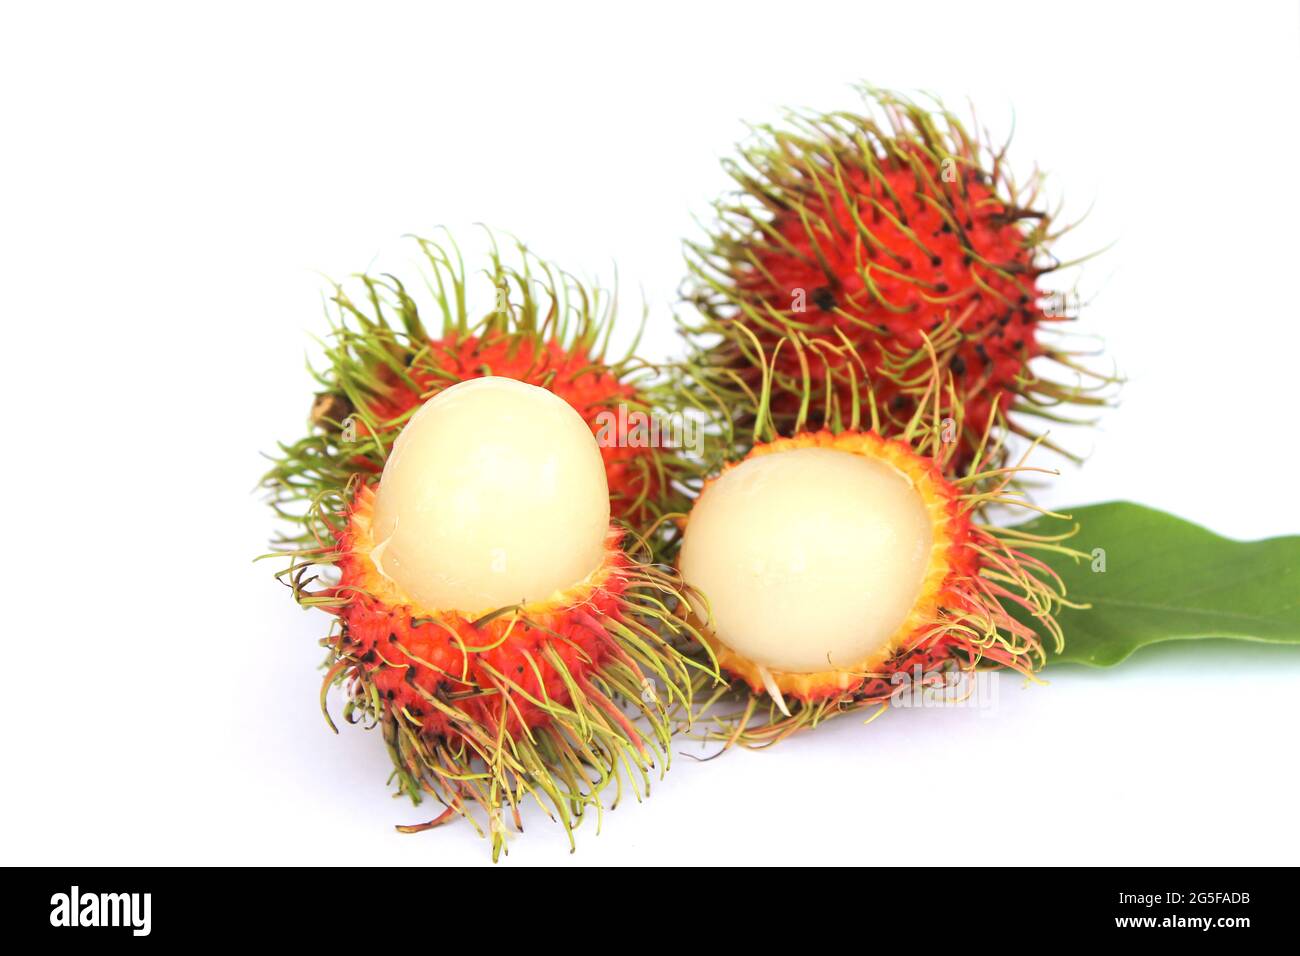 Rambutan dolce, frutta popolare in Thailandia isolato su sfondo bianco. Sbucciare la pelle per rivelare i semi all'interno. Con le foglie Foto Stock